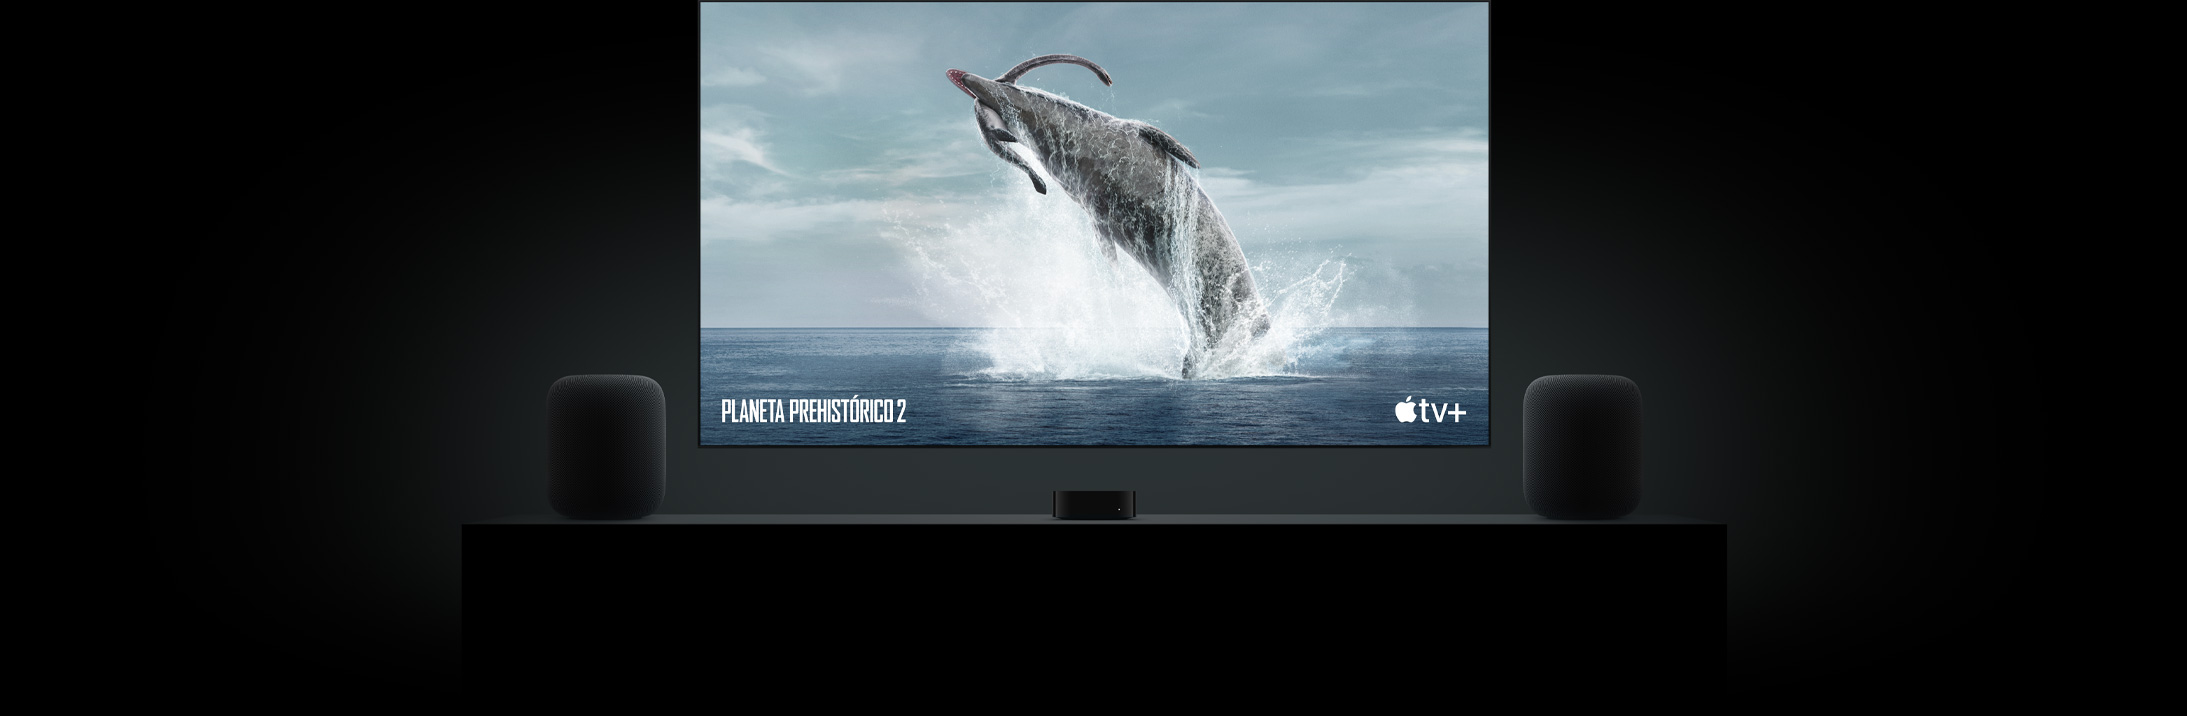 Un gran televisor de pantalla plana muestra la imagen de un dinosaurio de Planeta prehistórico. El dispositivo cuelga sobre un Apple TV y está enmarcado por dos HomePod que se encuentran sobre un mueble para TV